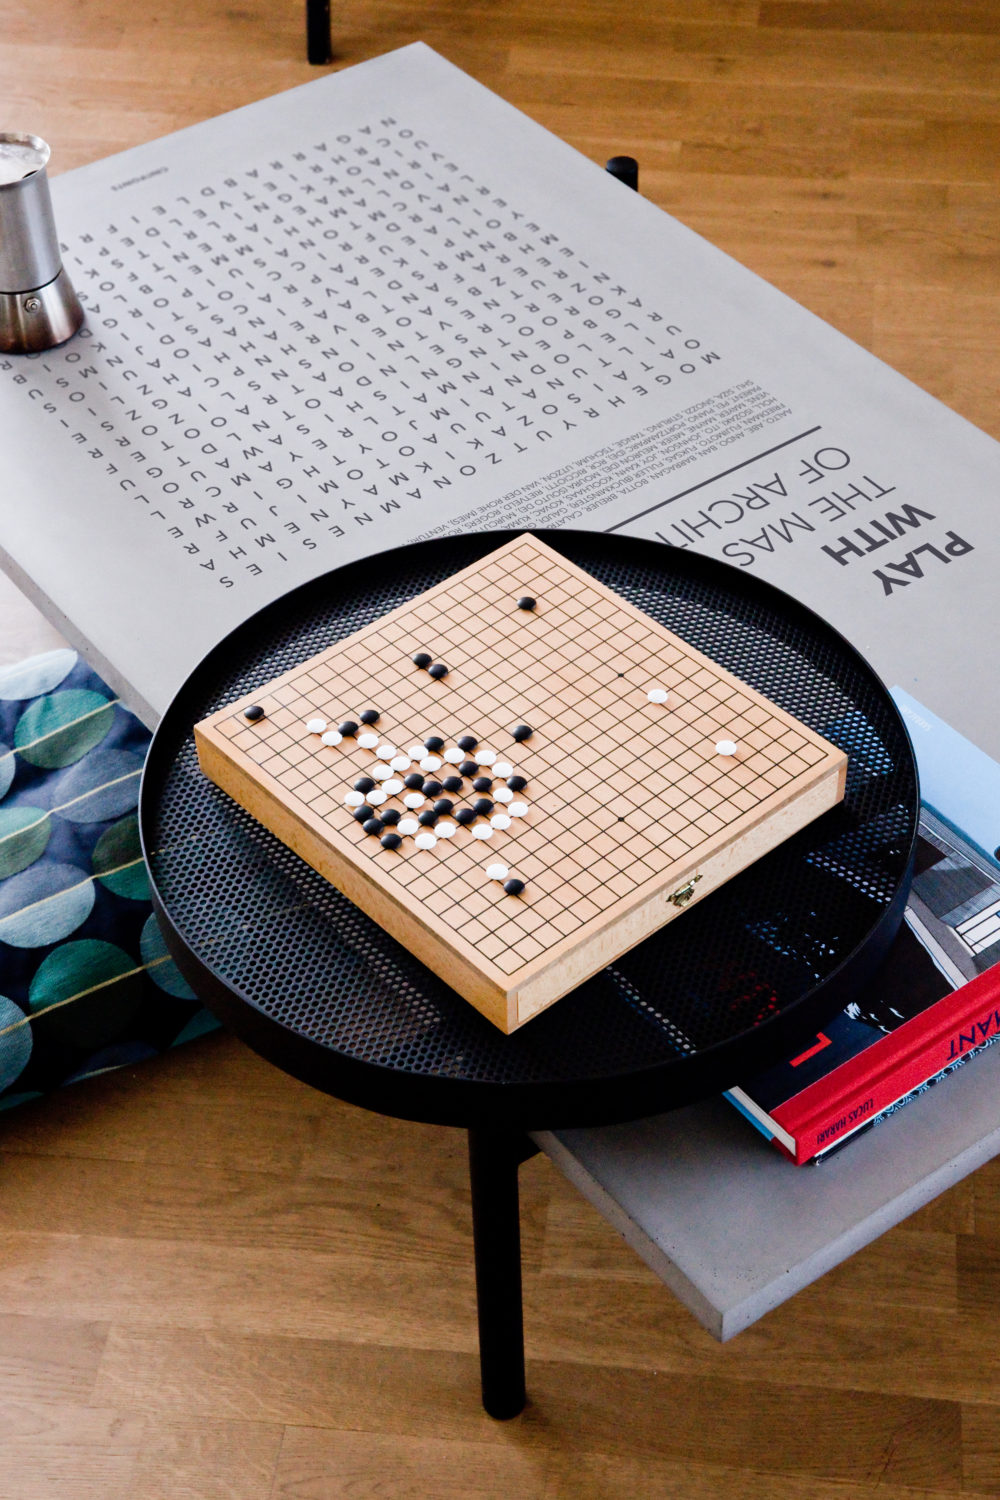 Notre table basse Twist avec son plateau en métal noir accessoirisé d'un jeu de Go